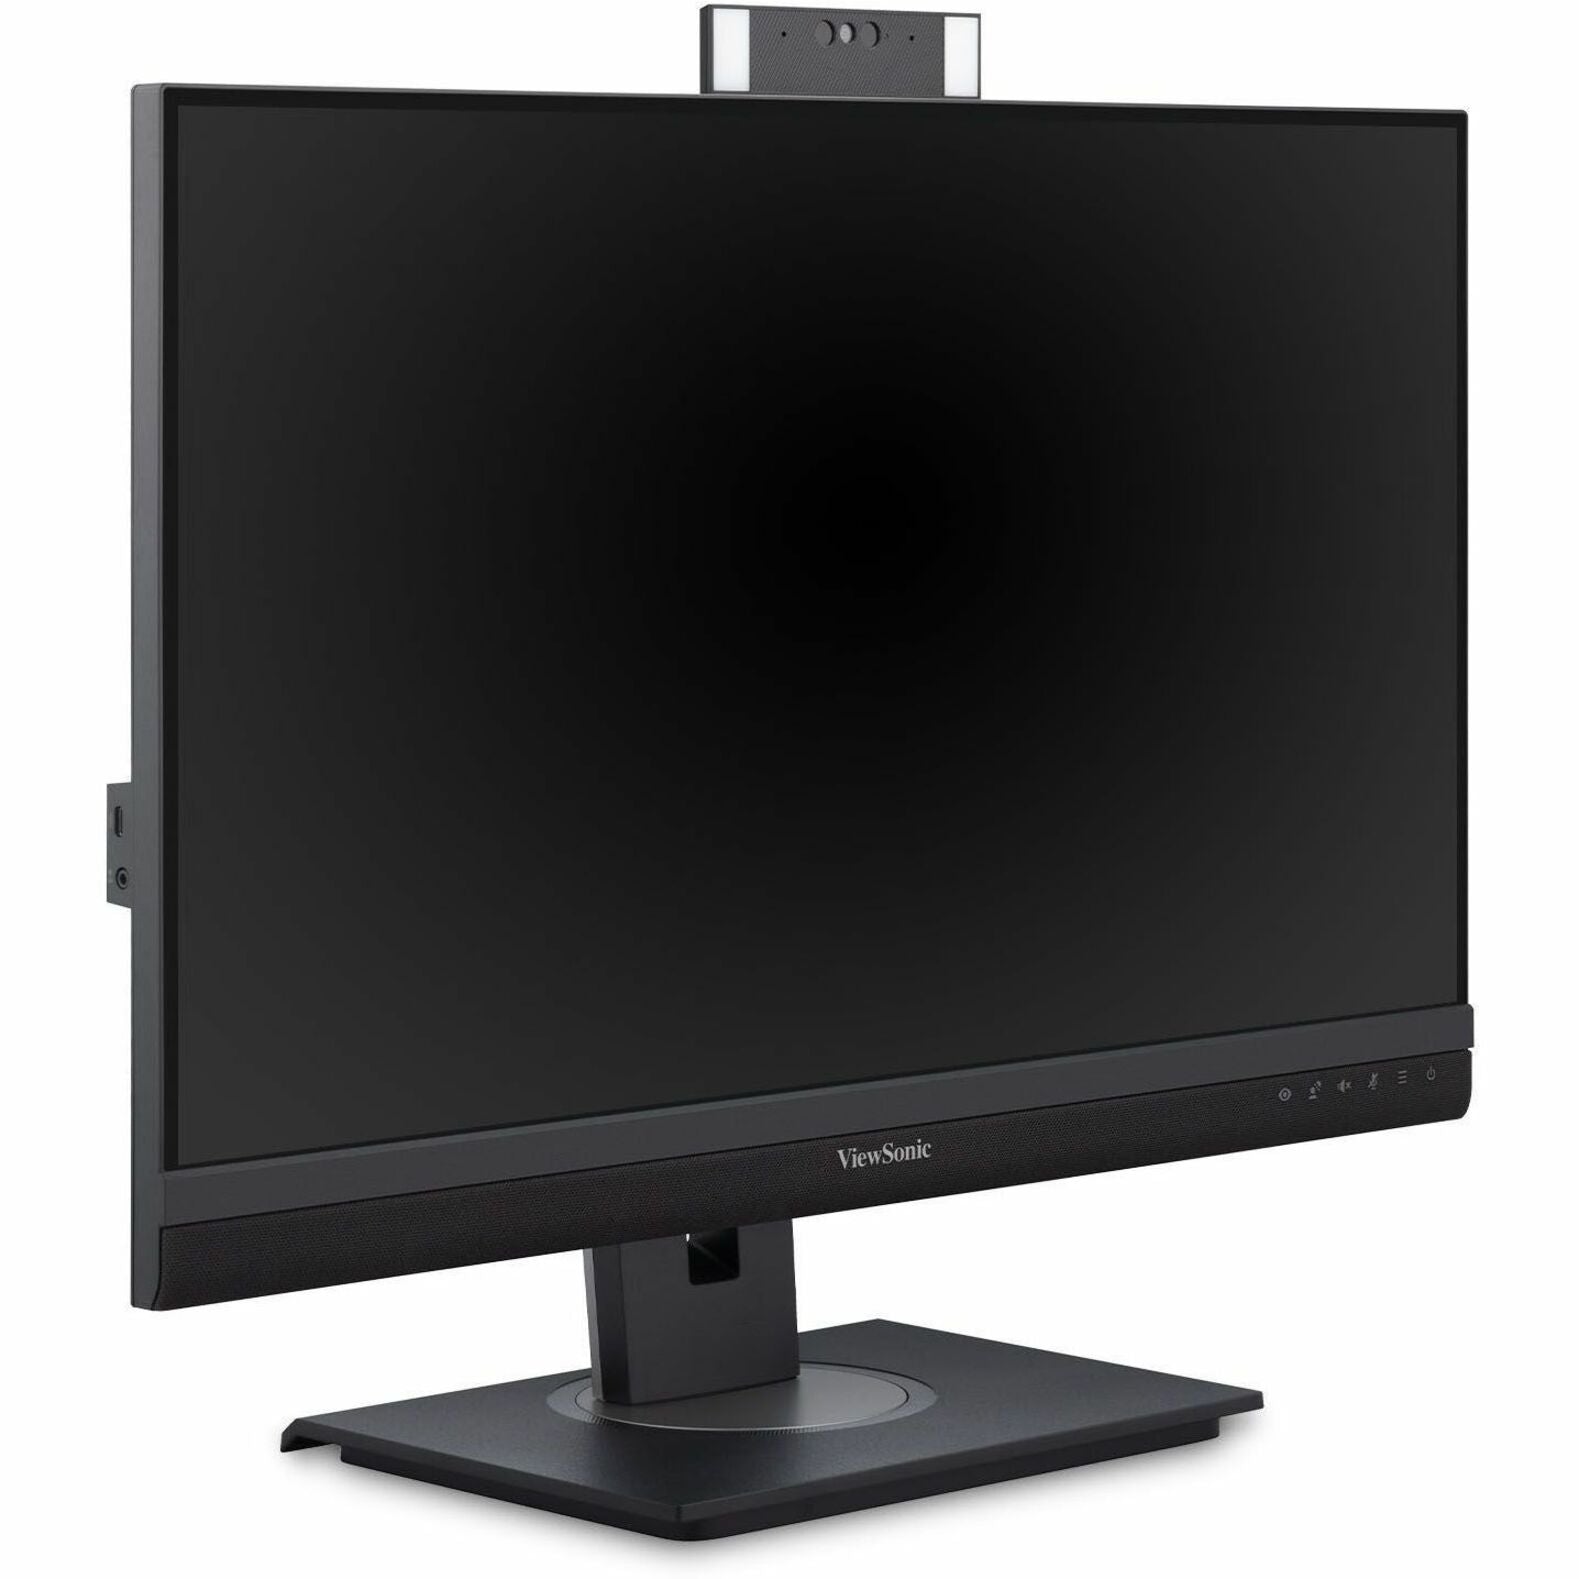 Monitor de Videoconferencia ViewSonic de 27 pulgadas y resolución 1440P con cámara web compatible con Windows Hello IR 9 (VG2757V-2K)